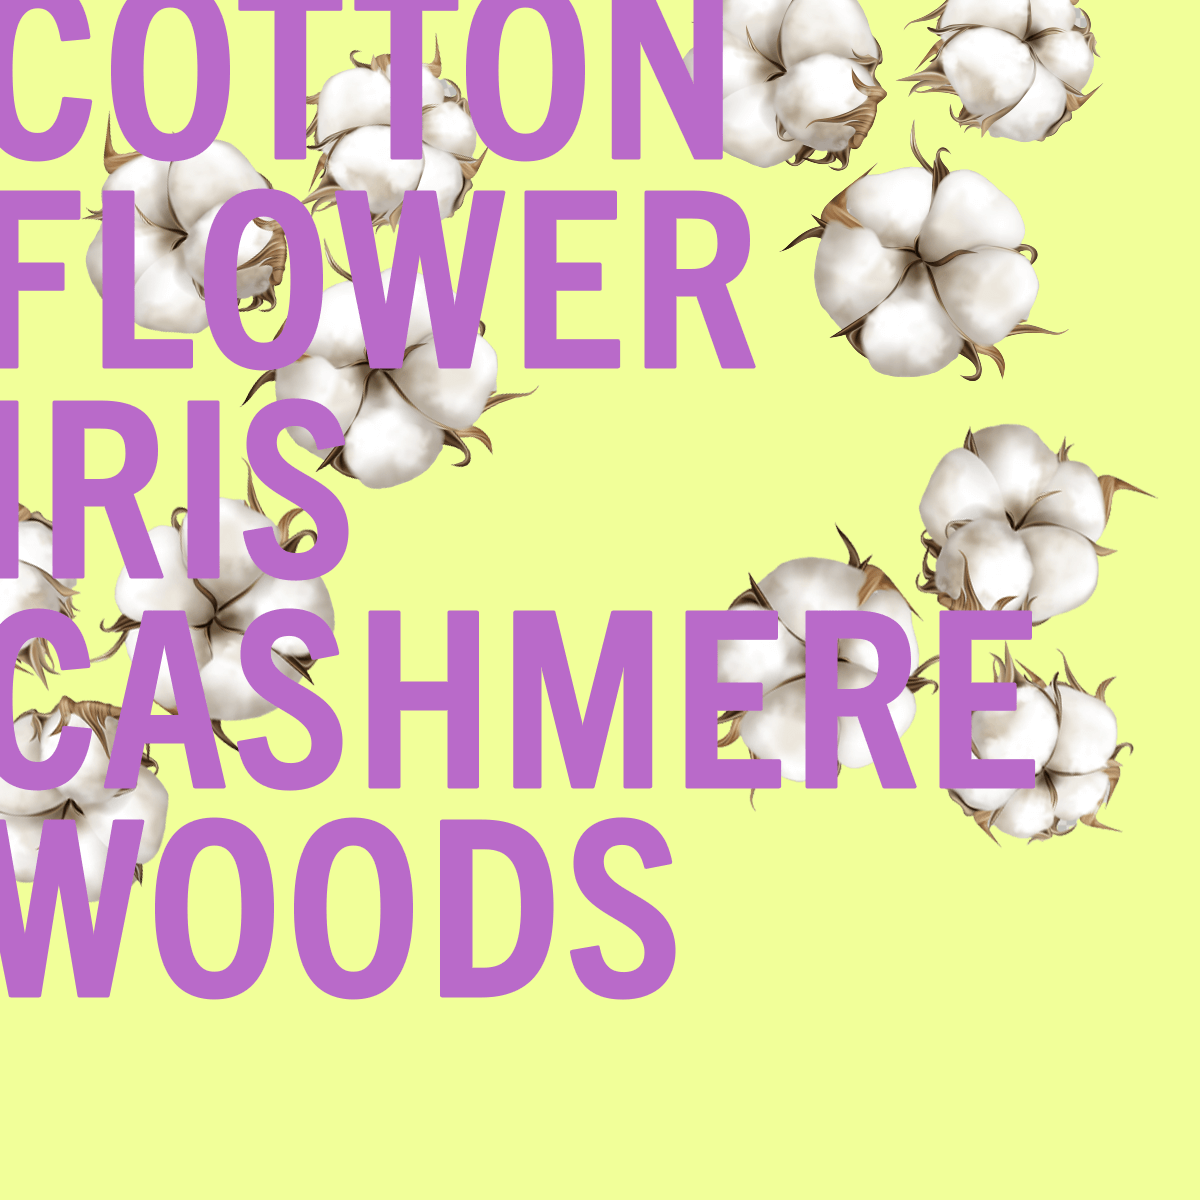 Edición limitada de la fragancia Cotton Flower 100 ml